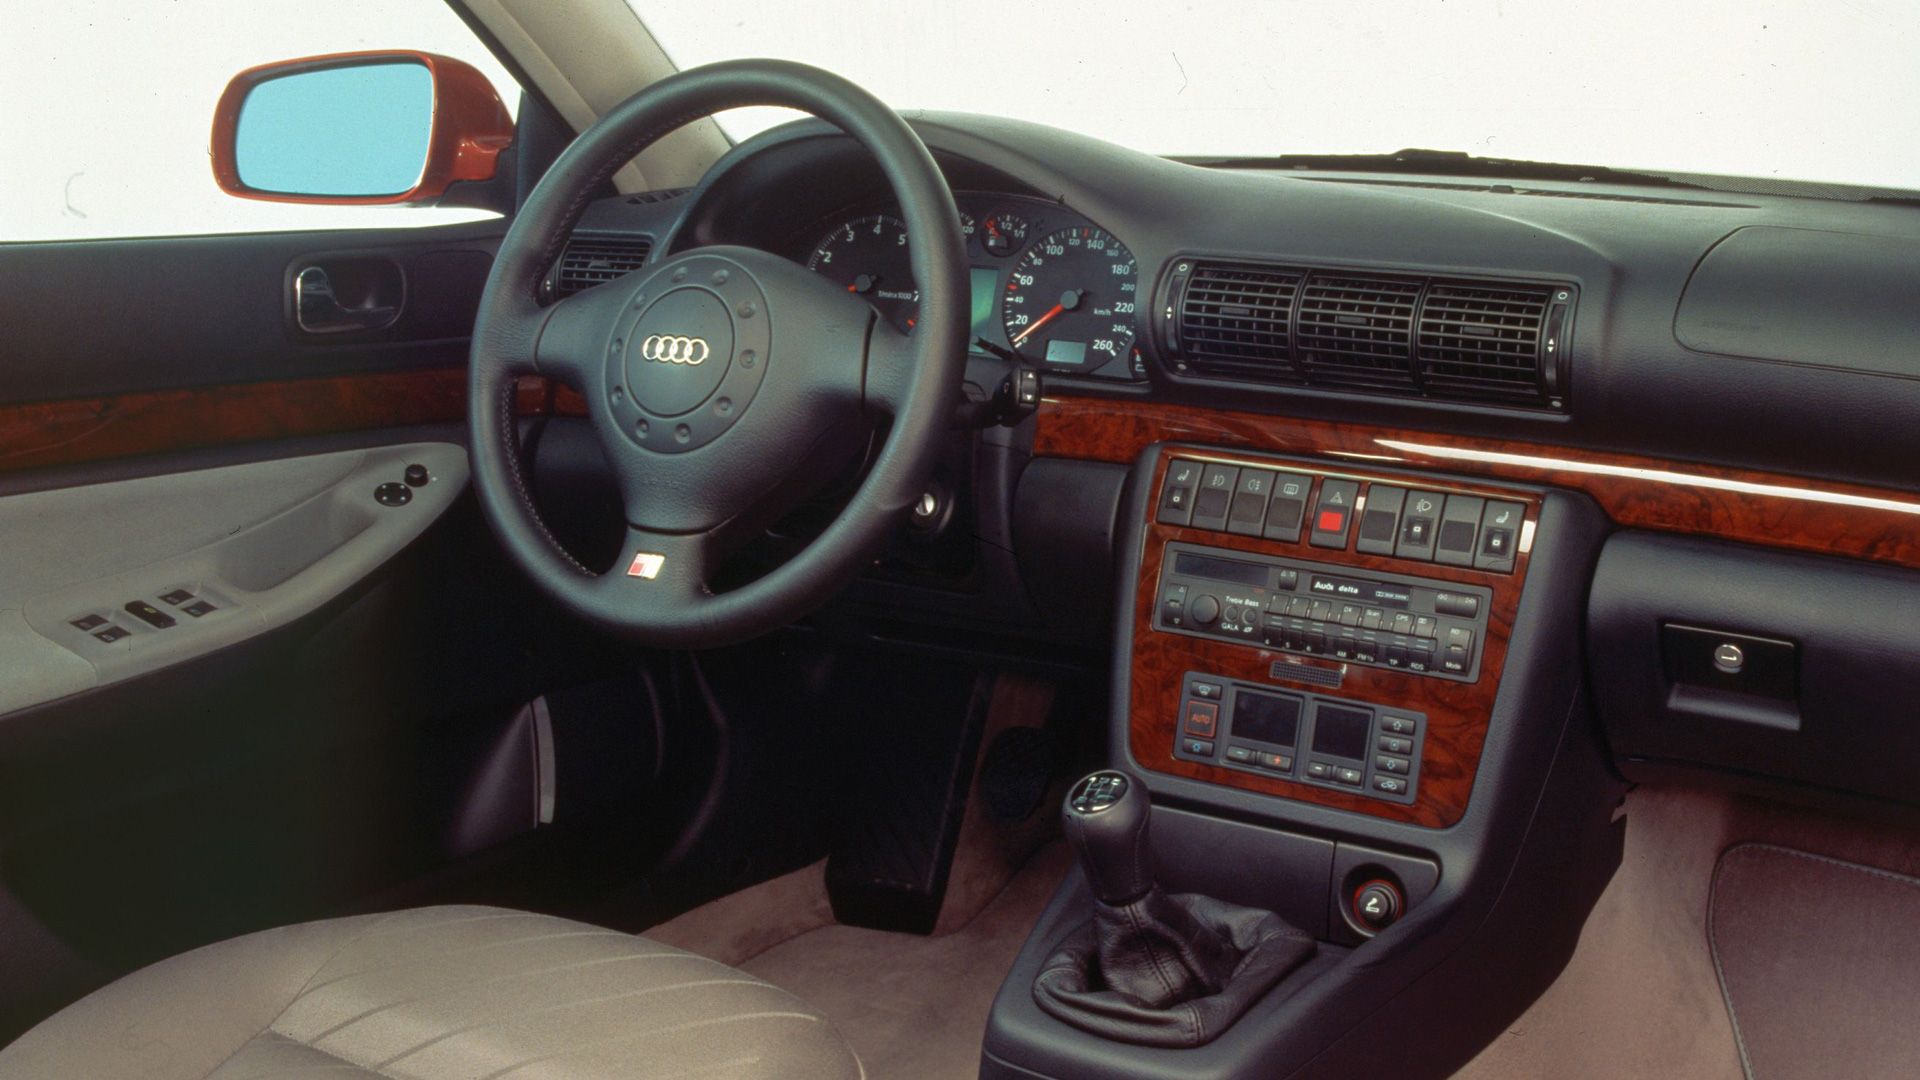 Audi A4 - Innenansicht (Cockpit) 1995